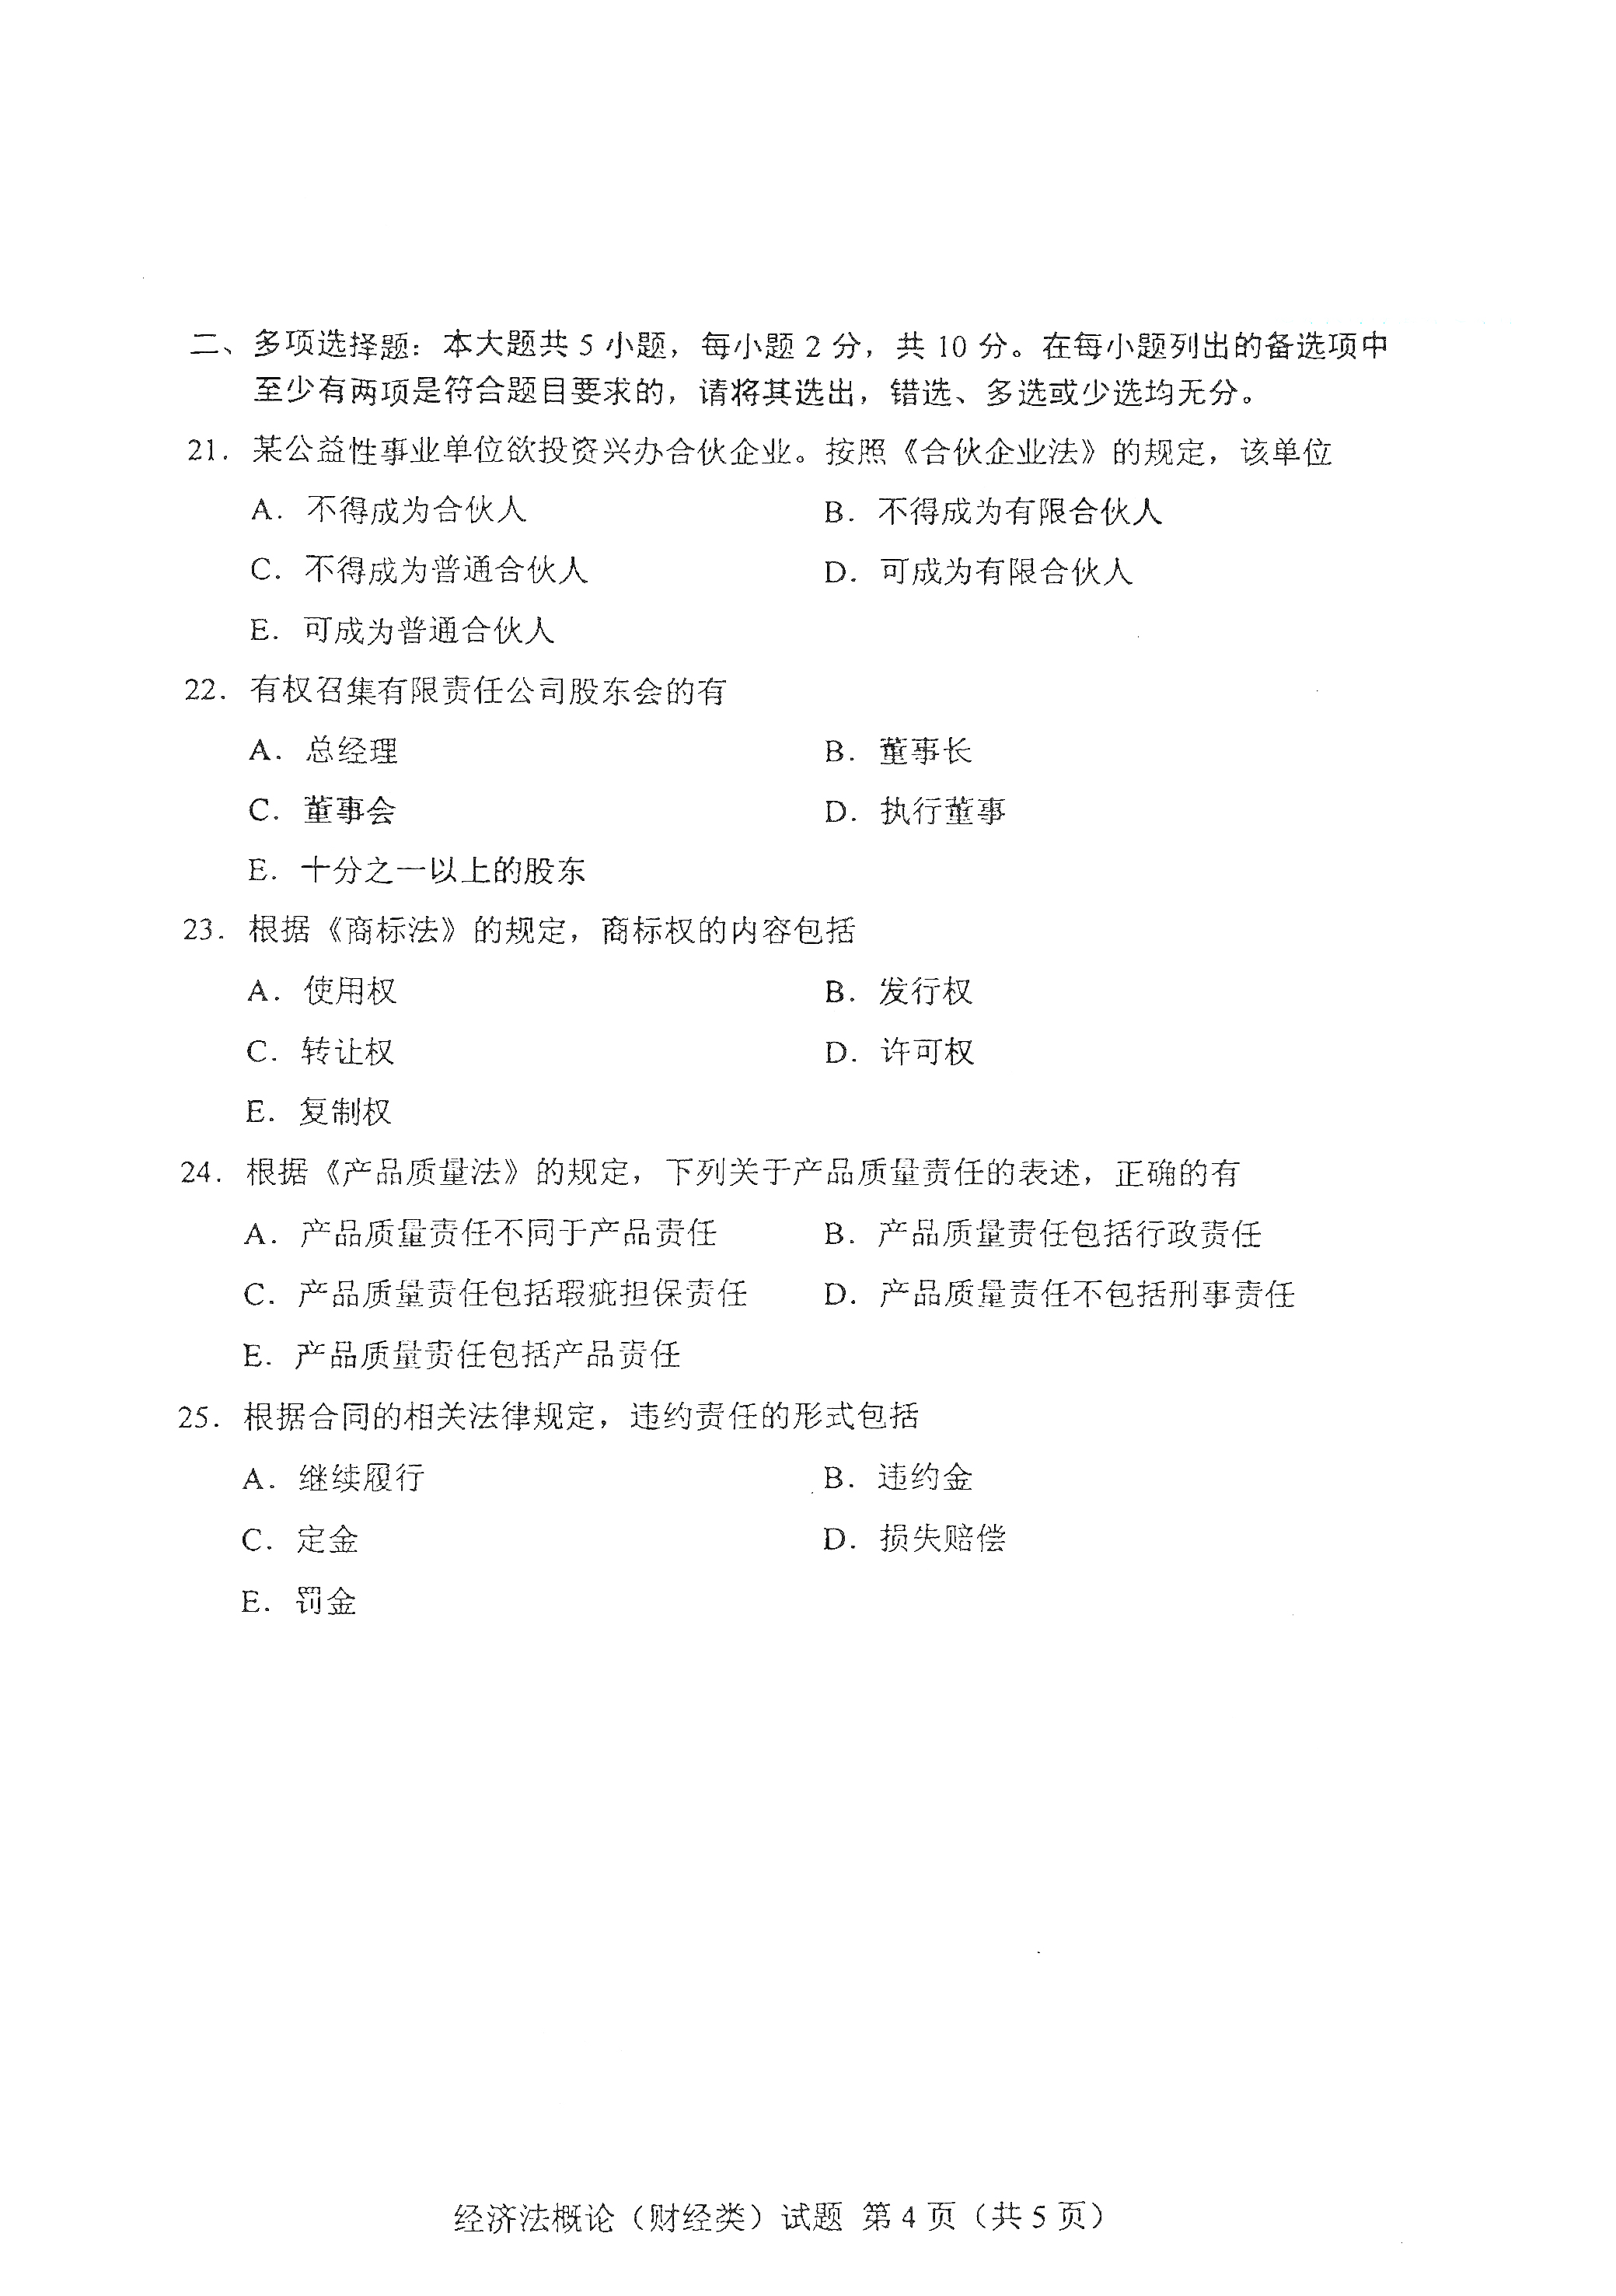 贵州自考00043经济法概论(财经类)真题试卷